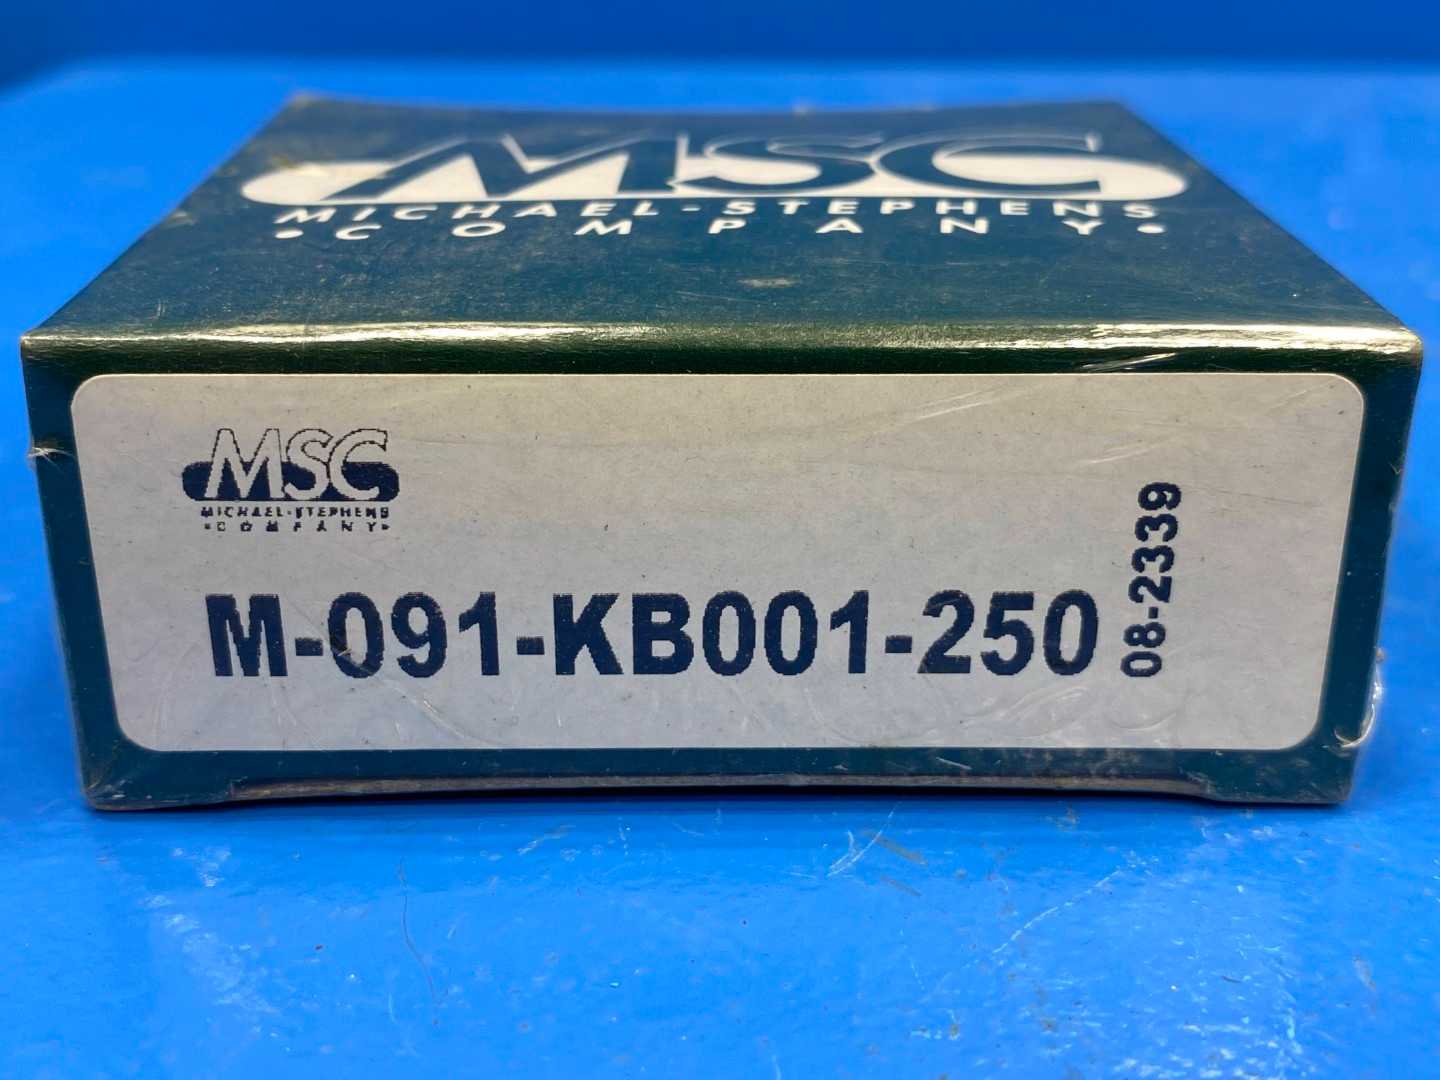 MSC Cylinder Seal Kit M-091-KB001-250